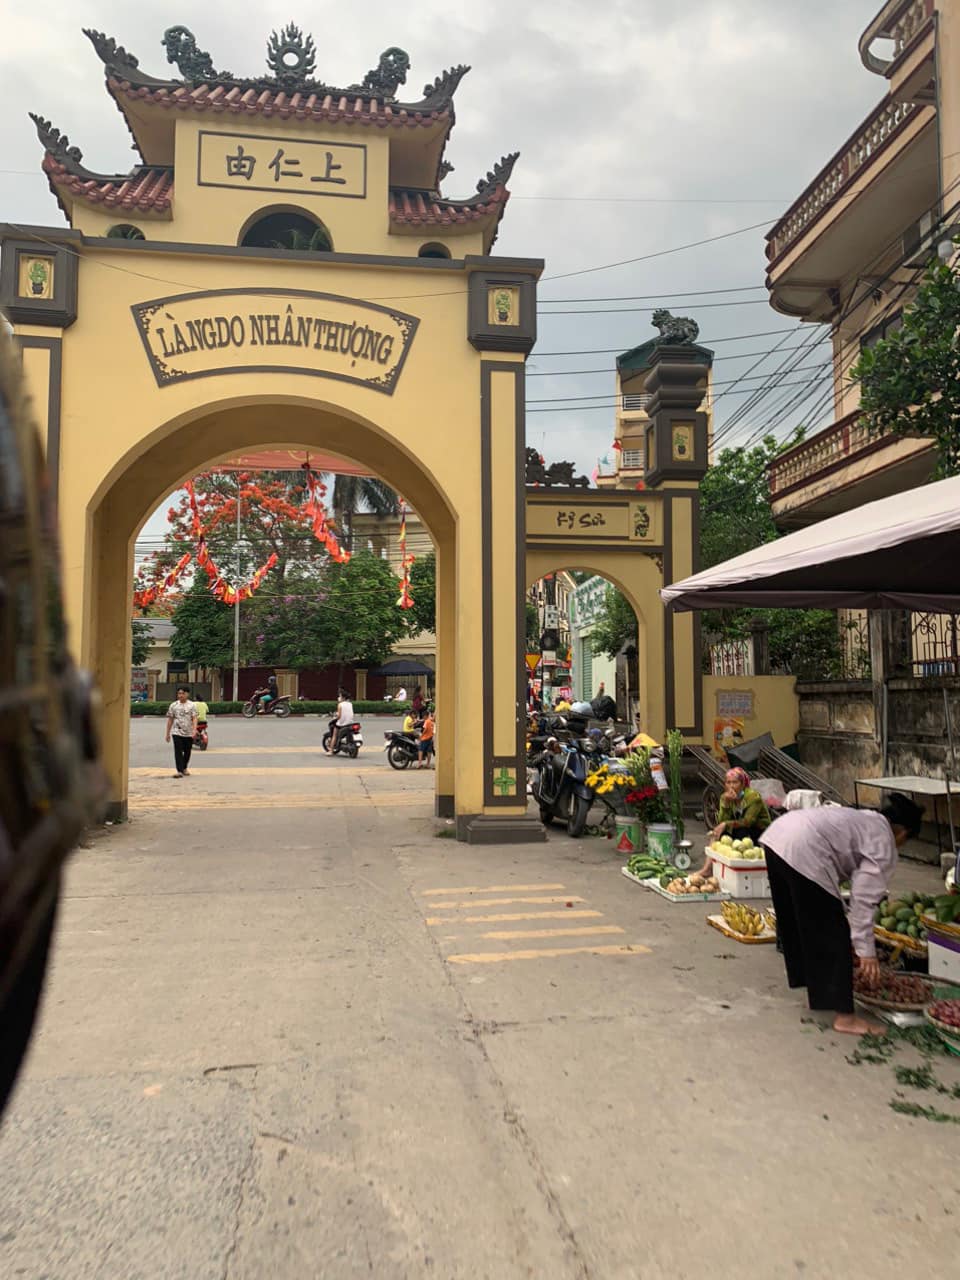 Bán đất huyện Mê Linh thành phố Hà Nội giá 1,5 tỷ